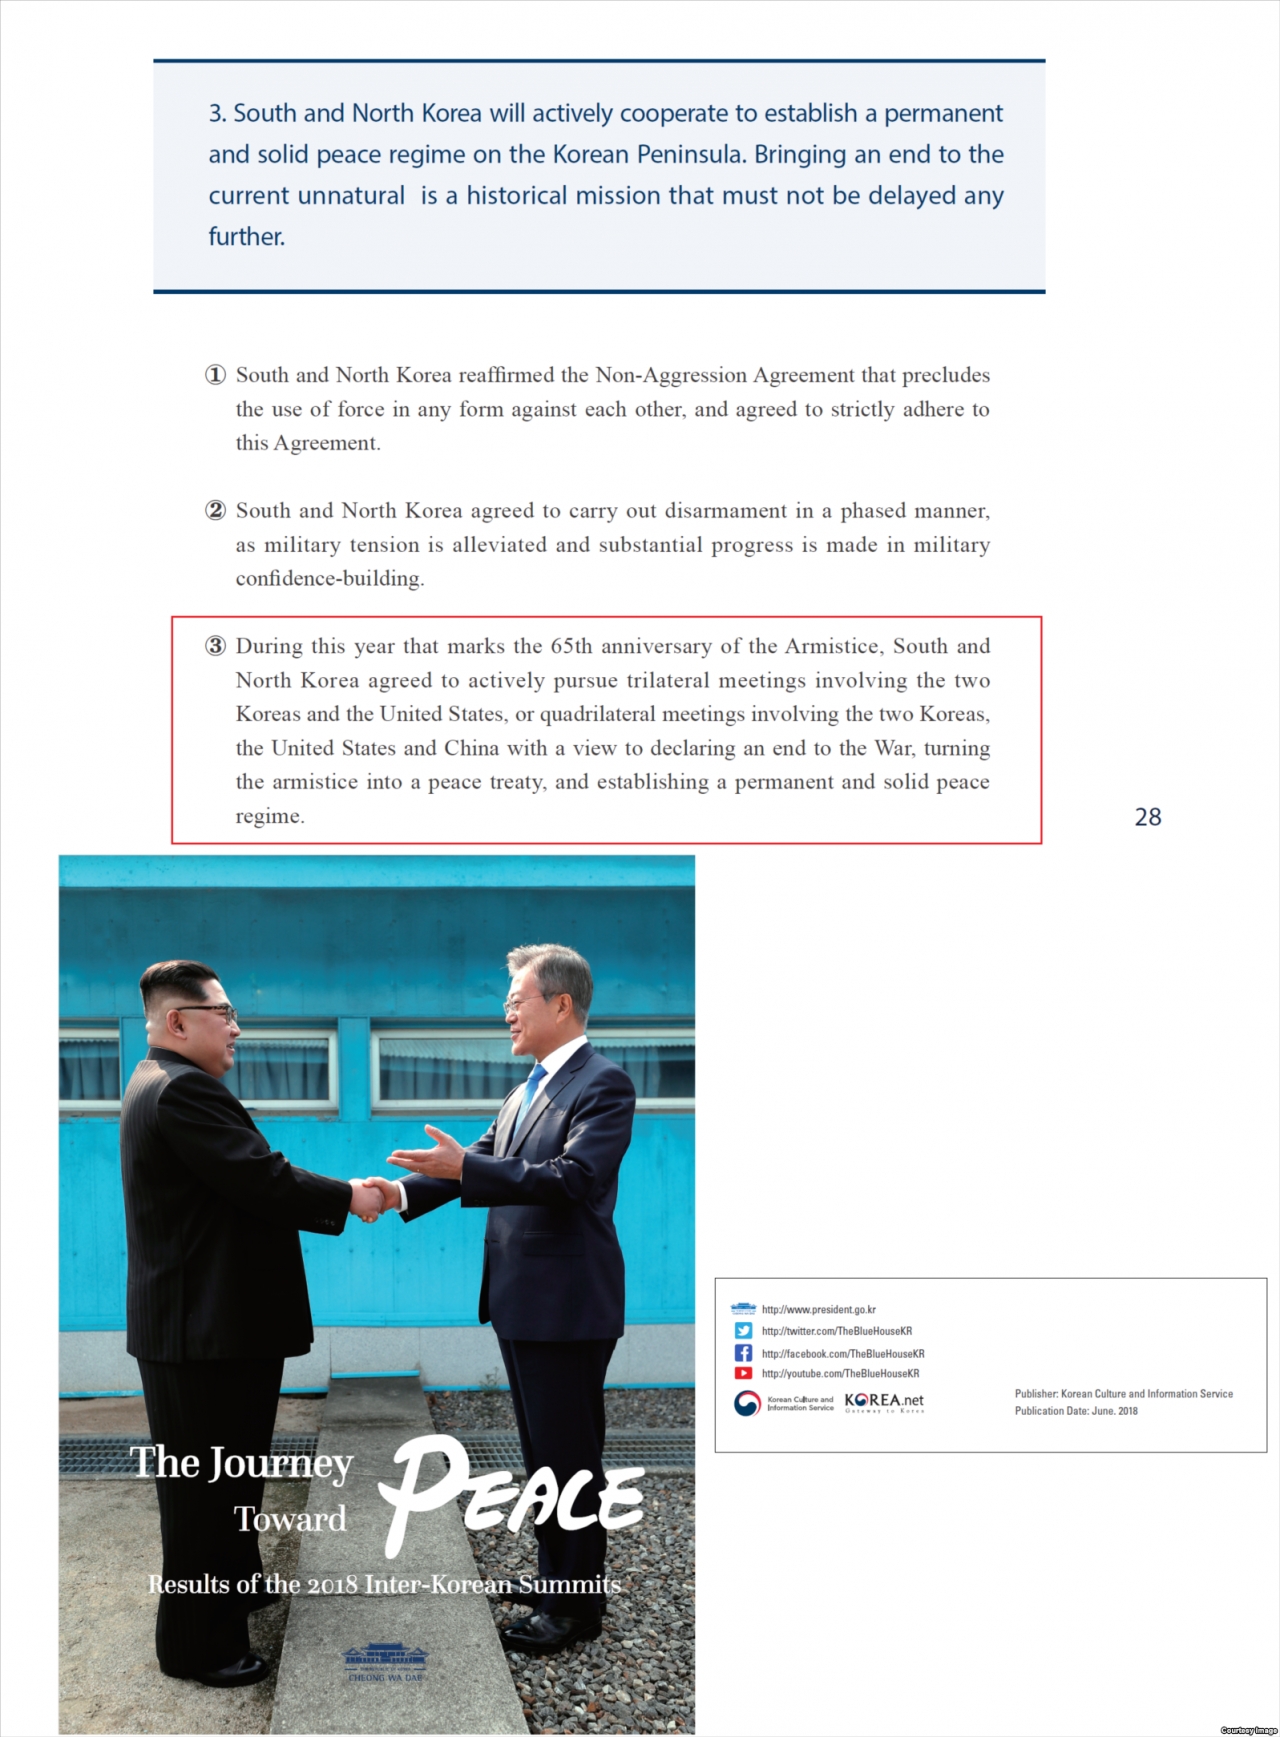 청와대가 6월 발행한 '평화를 향한 여정' 영문판 28페이지에 실린 판문점선언 3조 3항(붉은 네모 안)